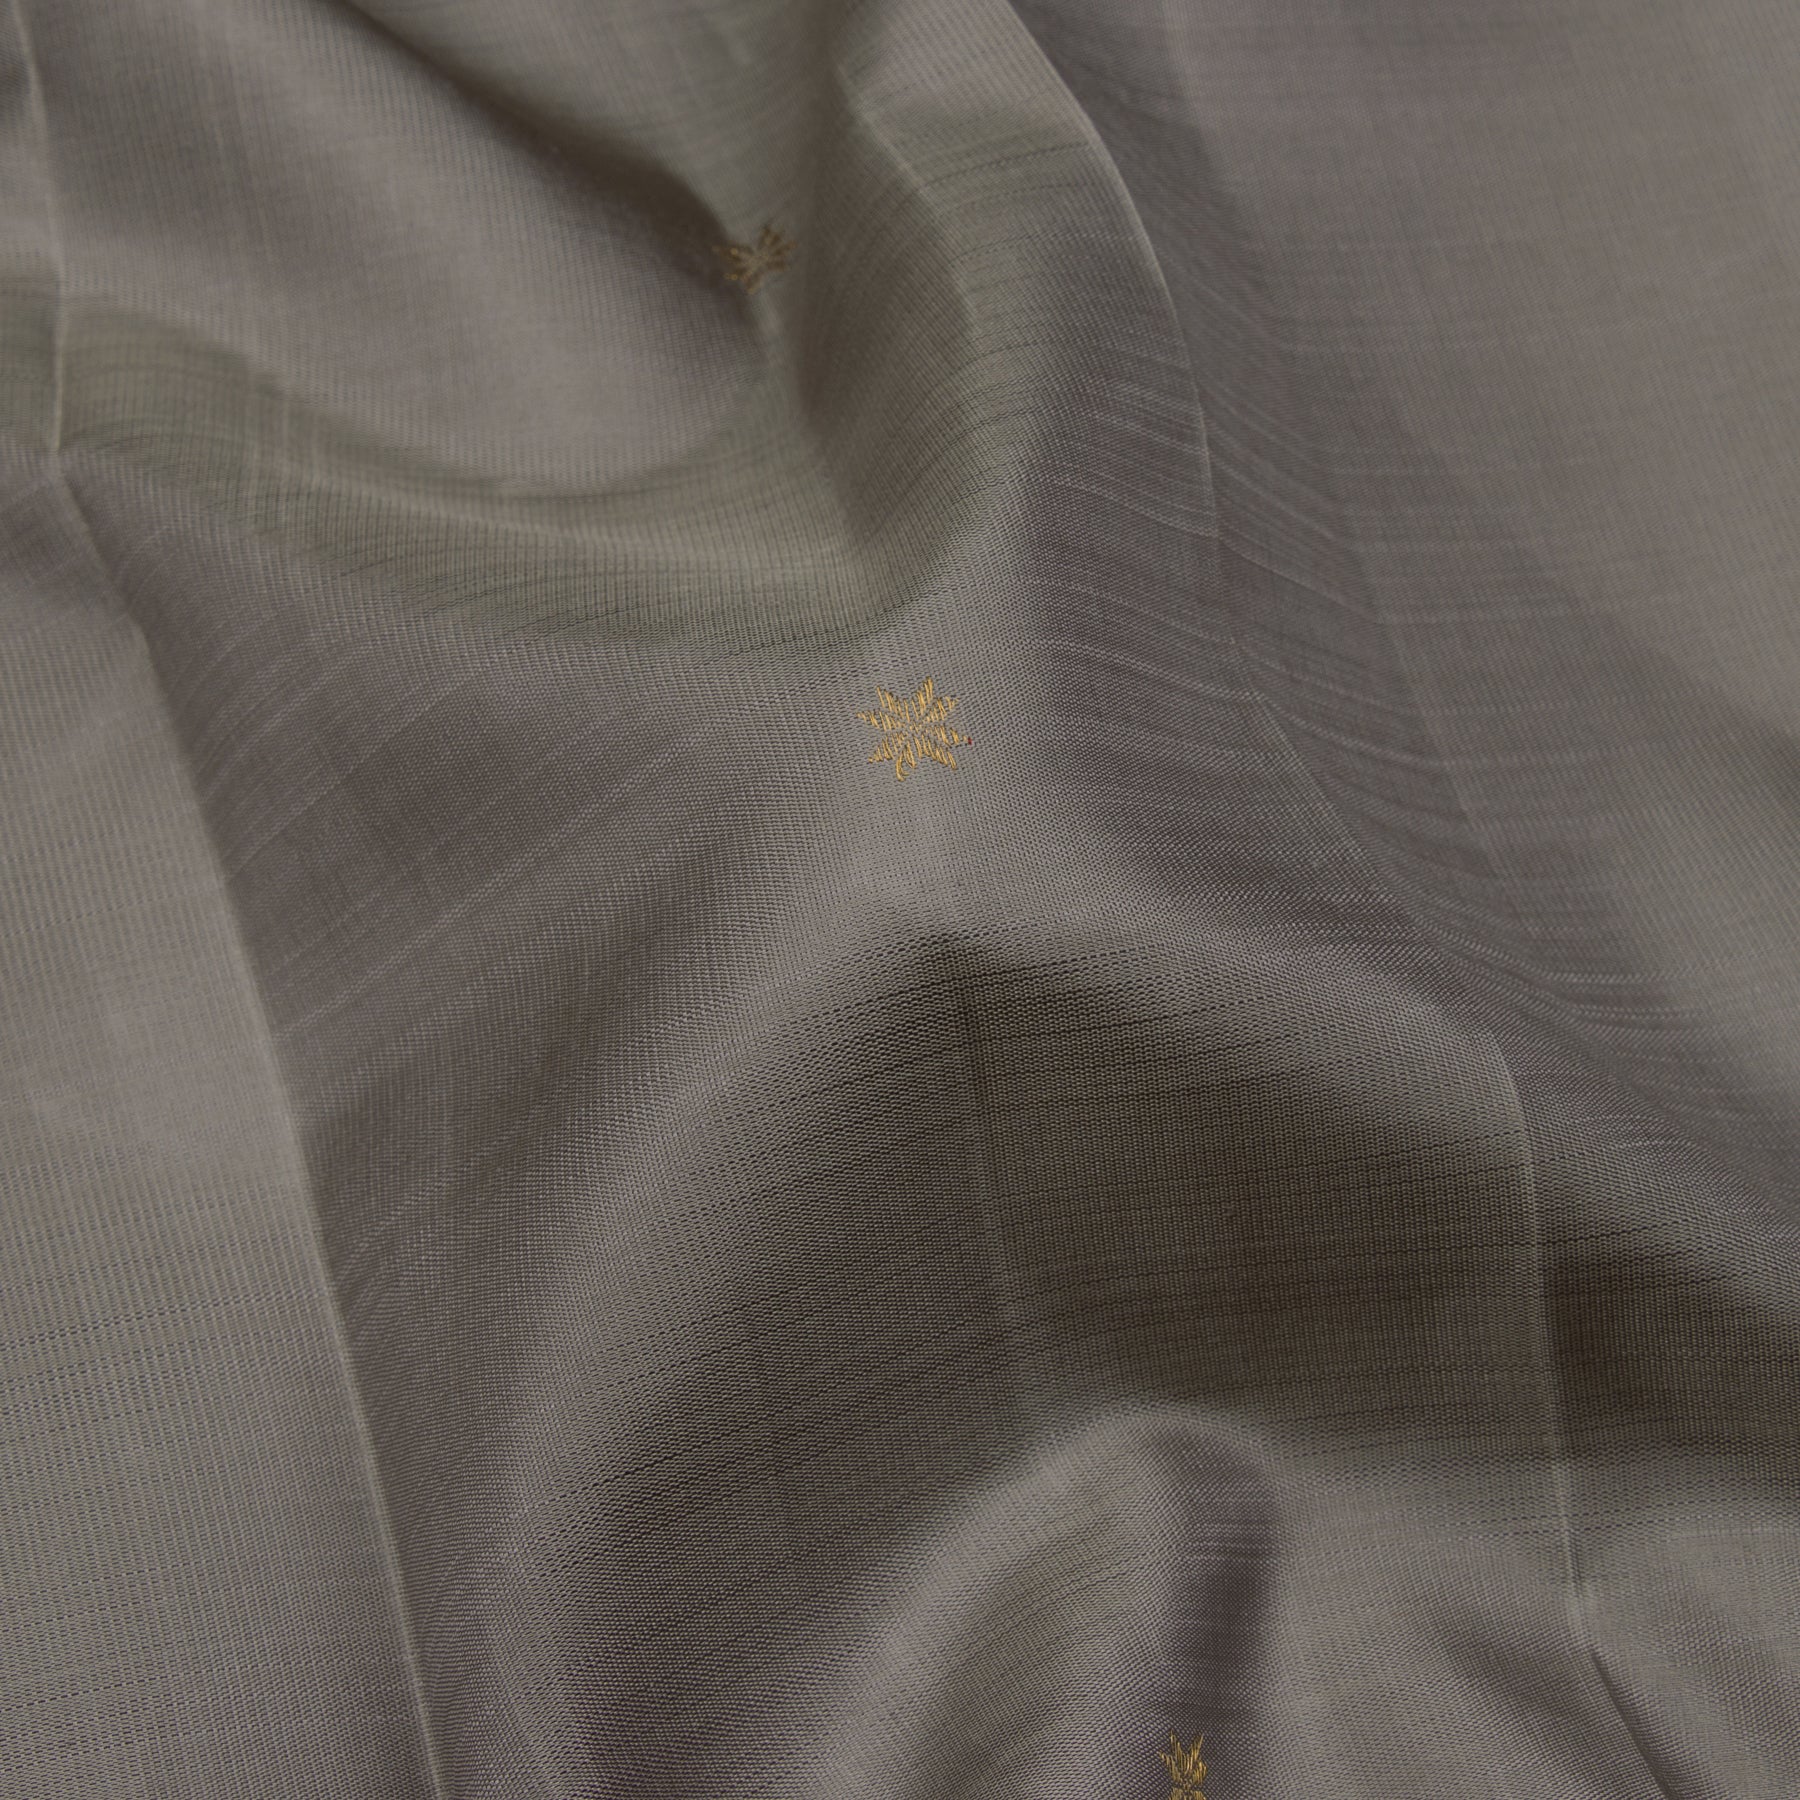 Kanakavalli Kanjivaram Silk Sari 23-595-HS001-13706 - Fabric View